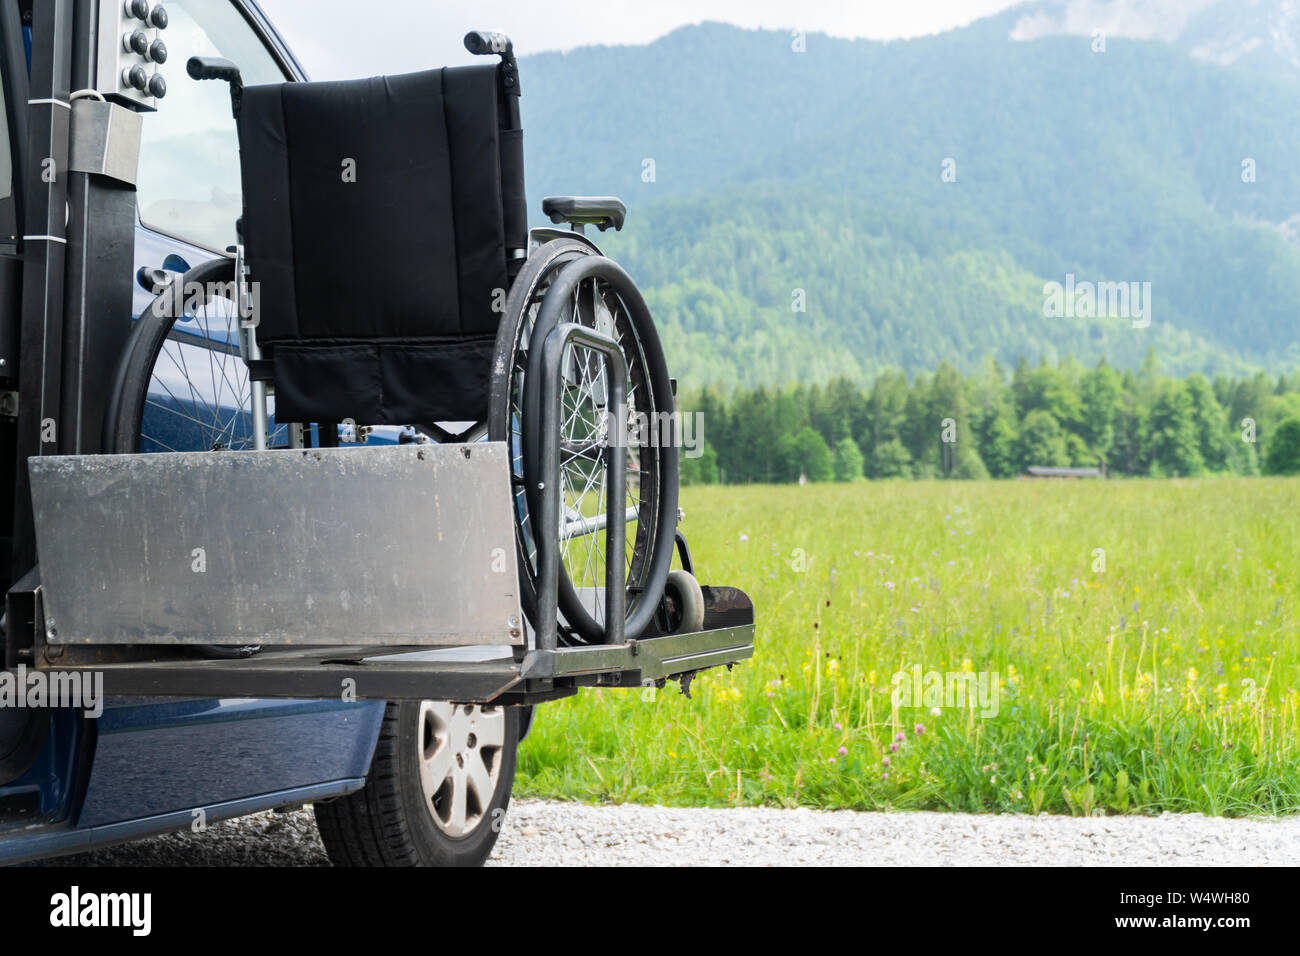 Il nero di sollevamento elettrico veicolo specializzato per le persone con disabilità. Sedia a rotelle vuota su una rampa con la natura e le montagne nella parte posteriore Foto Stock